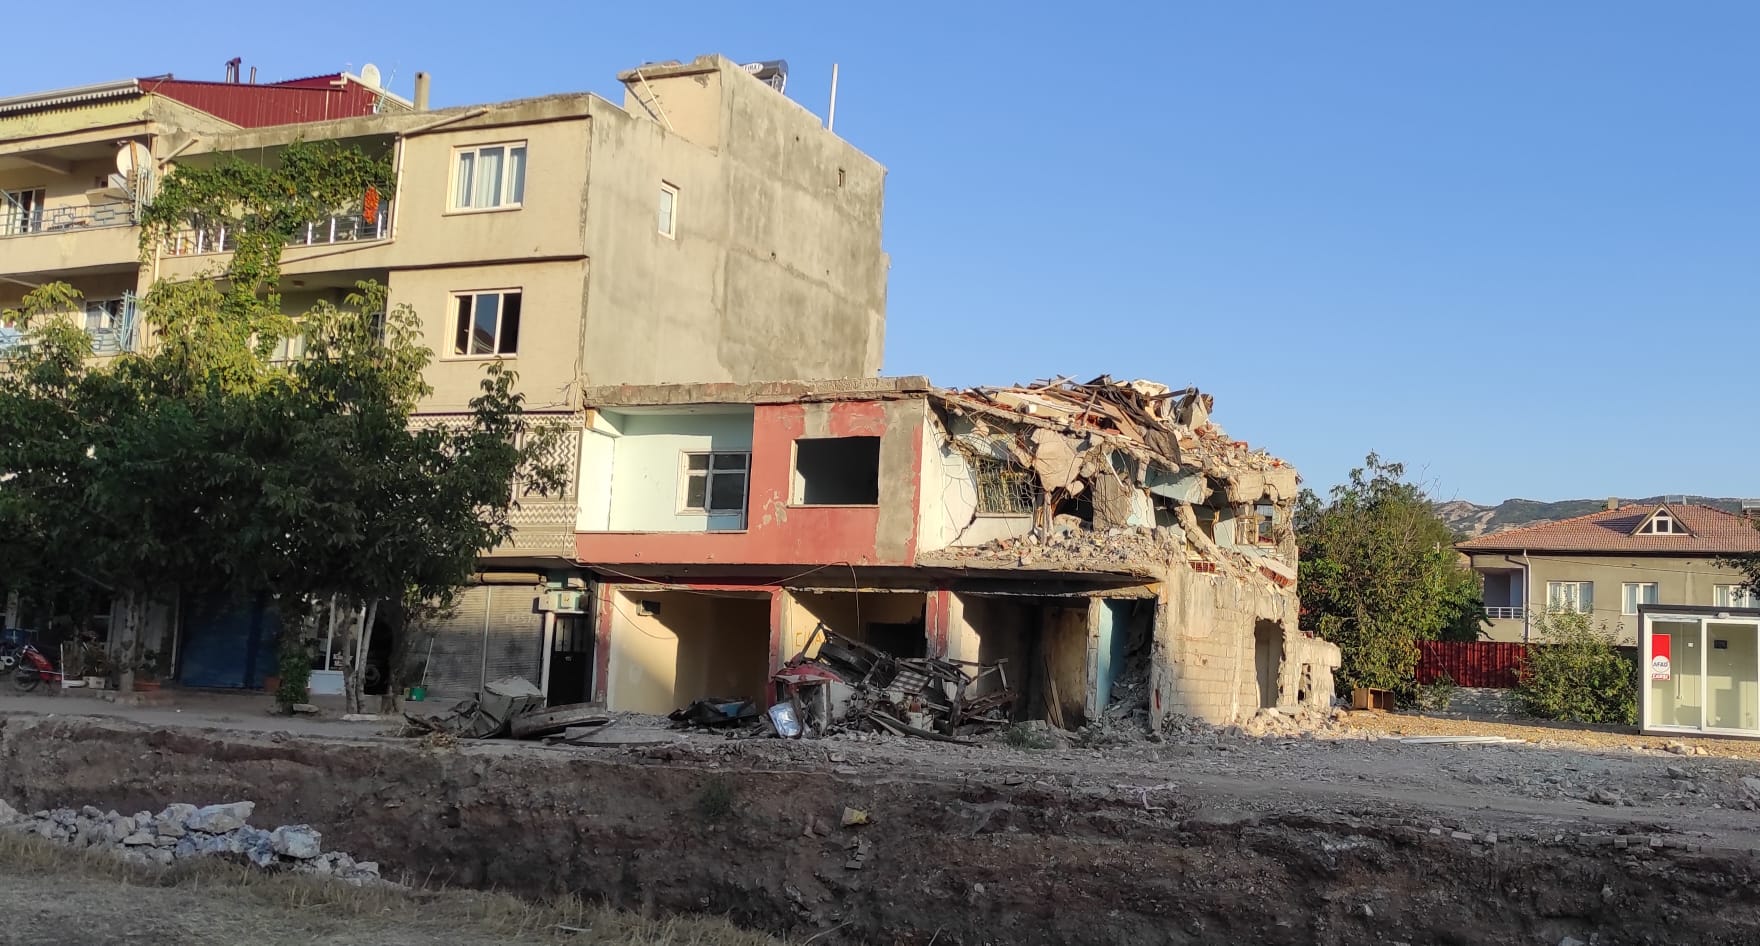 Odak muhabiri Nurbanu Soy deprem bölgesinde 